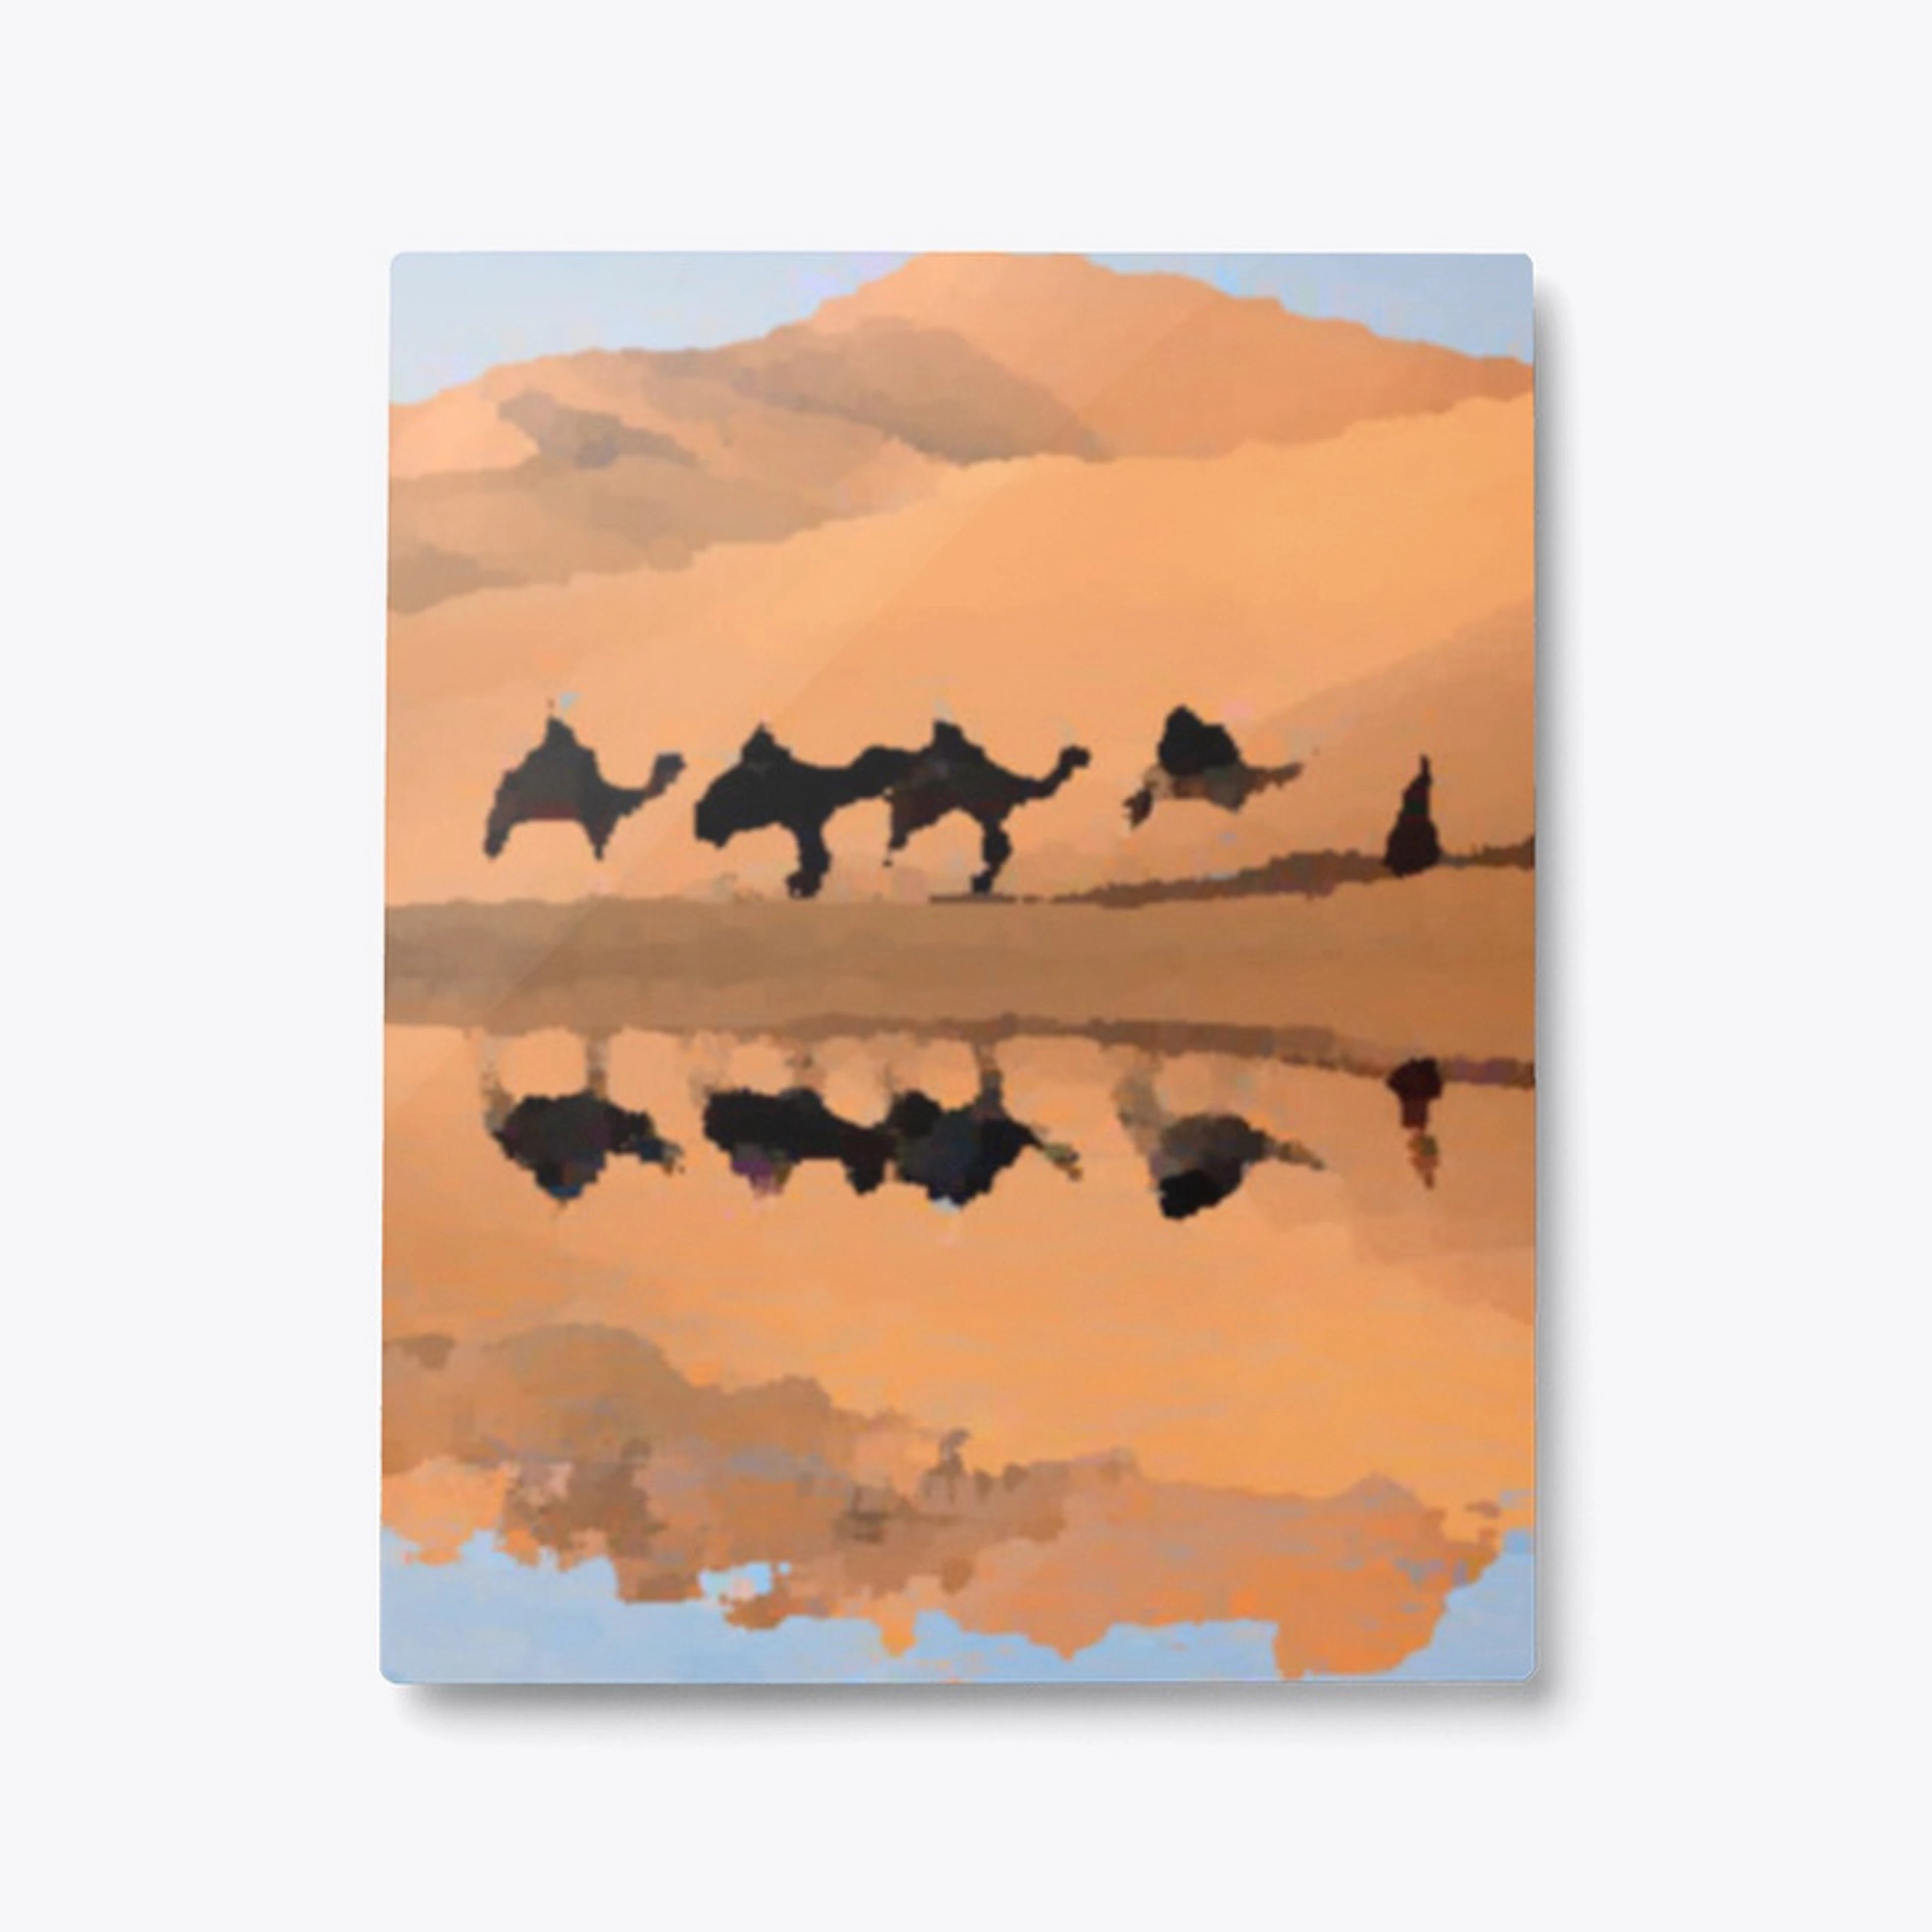 Reflection of a Merzouga camel caravan